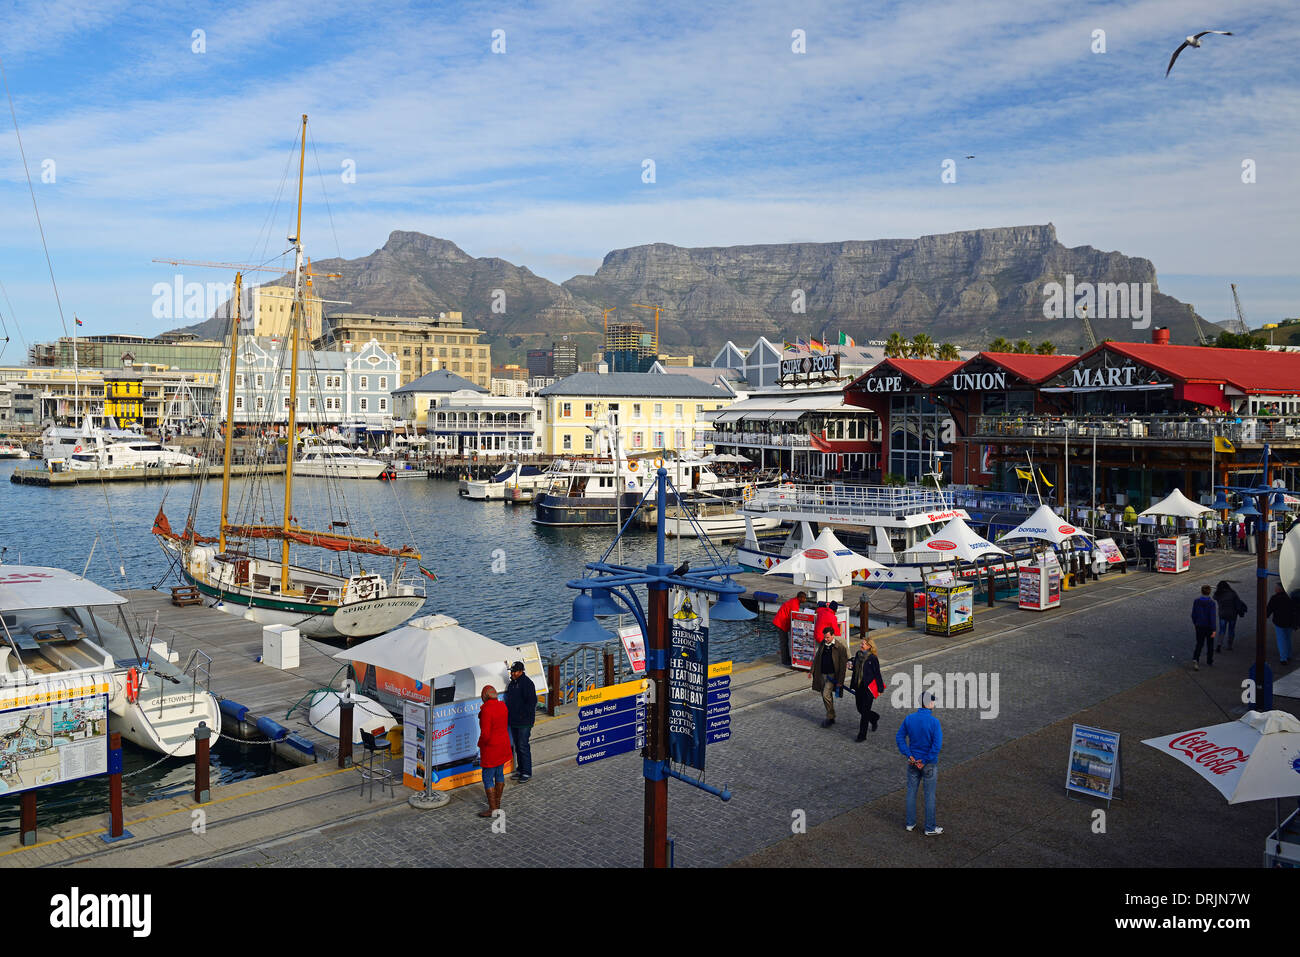 Victoria und Alfred Waterfront, Touristenzentrum, im Hintergrund den Tafelberg, Kapstadt, Westkap, Westkap, Südafrika, Afr Stockfoto